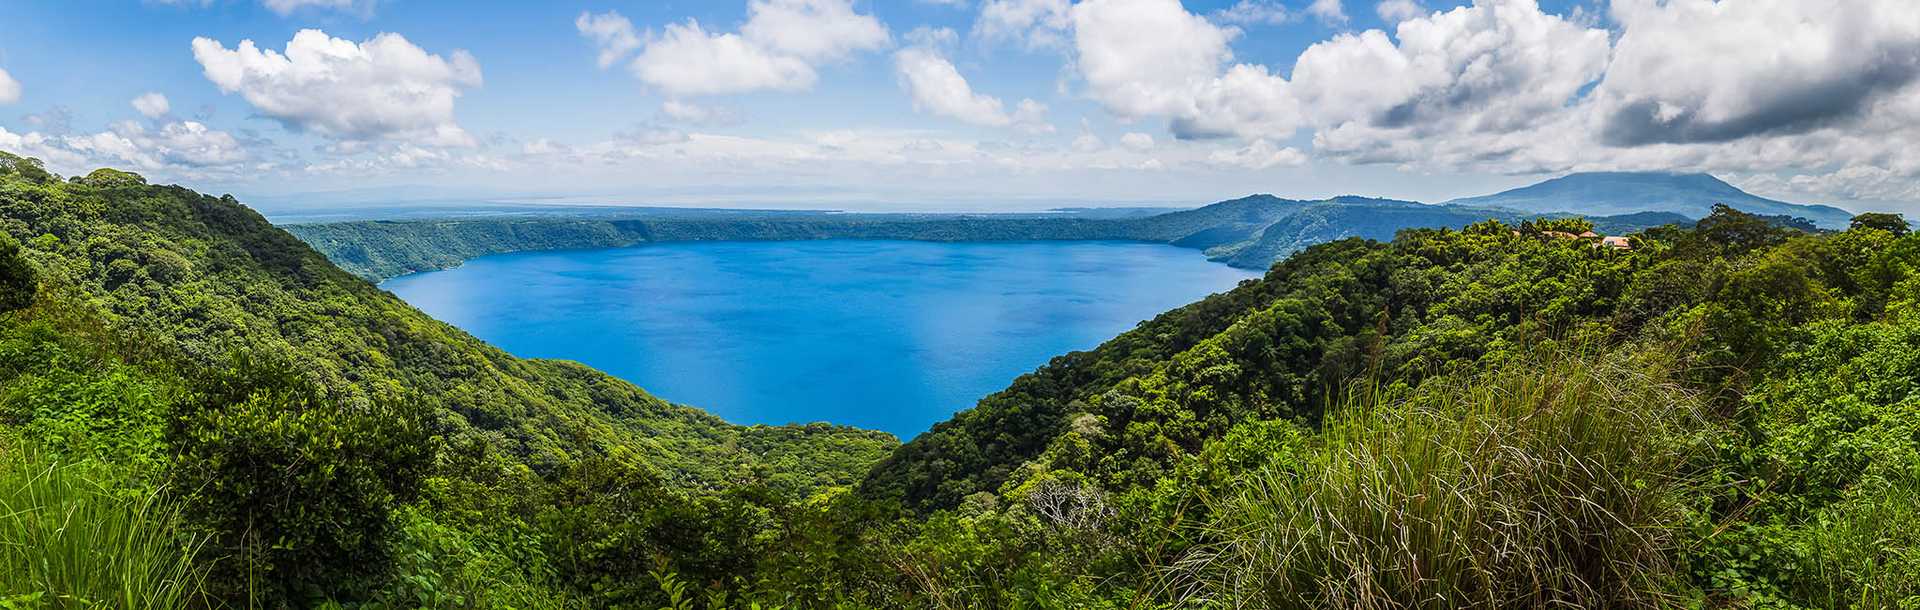 View of Apoyo Lagoon from Mirador de Catarina in Nicaragua 